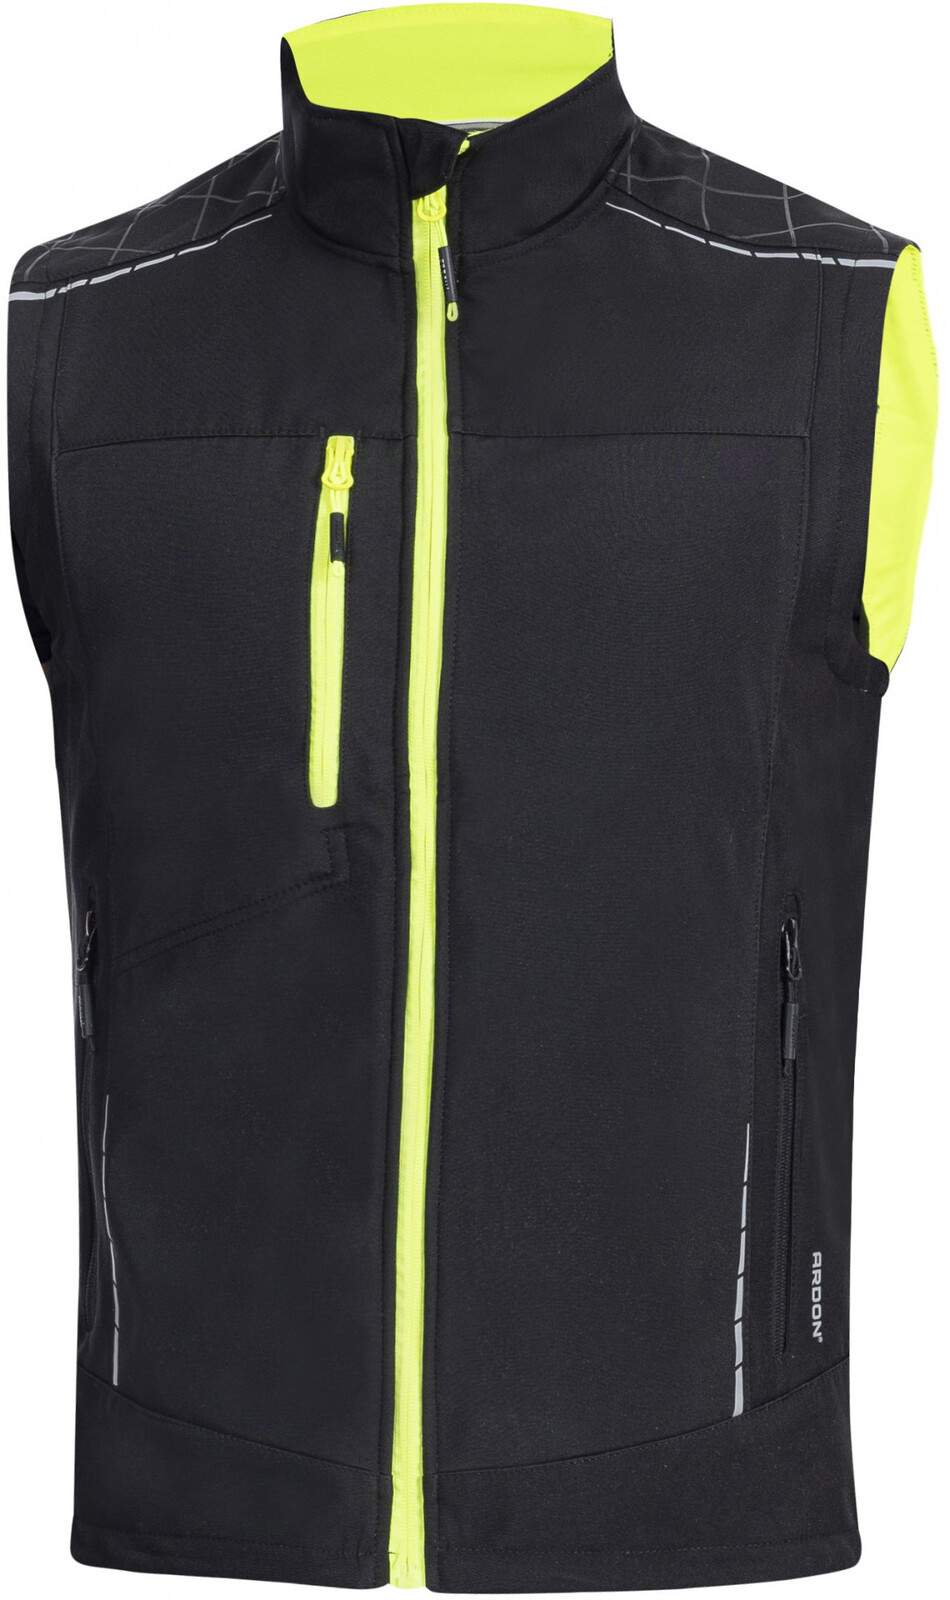 Pánska softshellová vesta Ardon Vision - veľkosť: M, farba: čierna/žltá